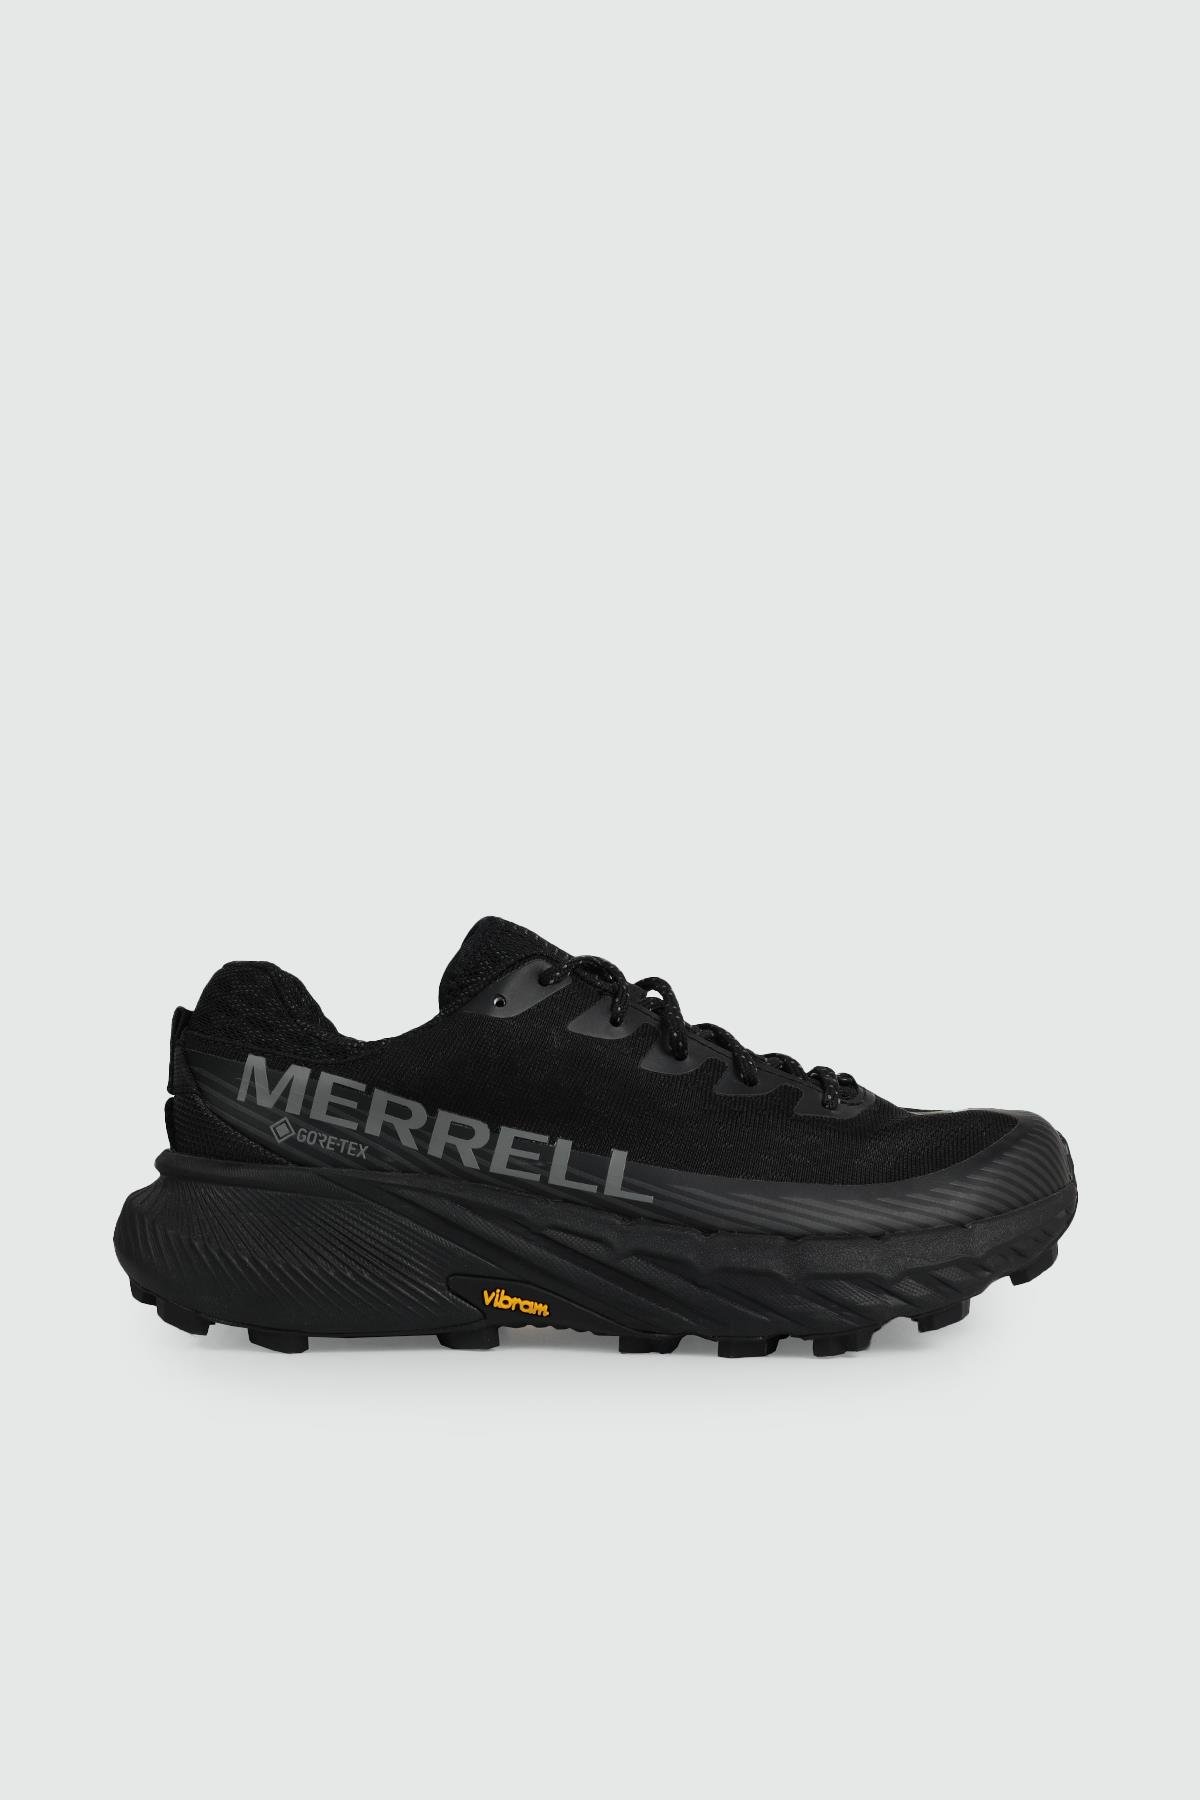 MERRELL Outdoor Su Geçirmez BLACK/BLACK Erkek Spor Ayakkabı J067745 |  Ayakkabı City